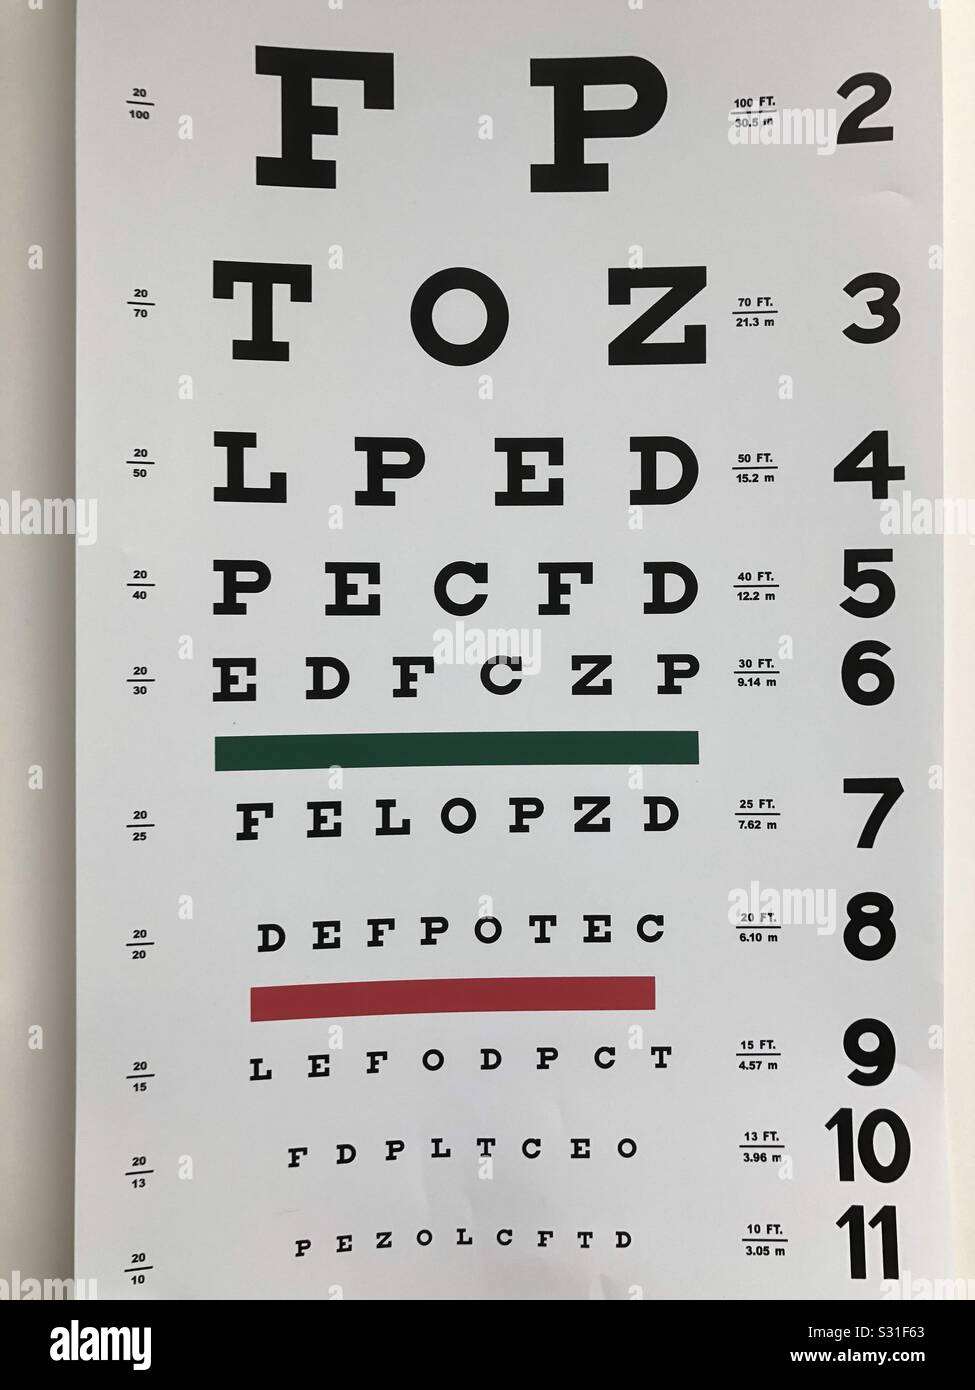 10 ft. Snellen Eye Chart